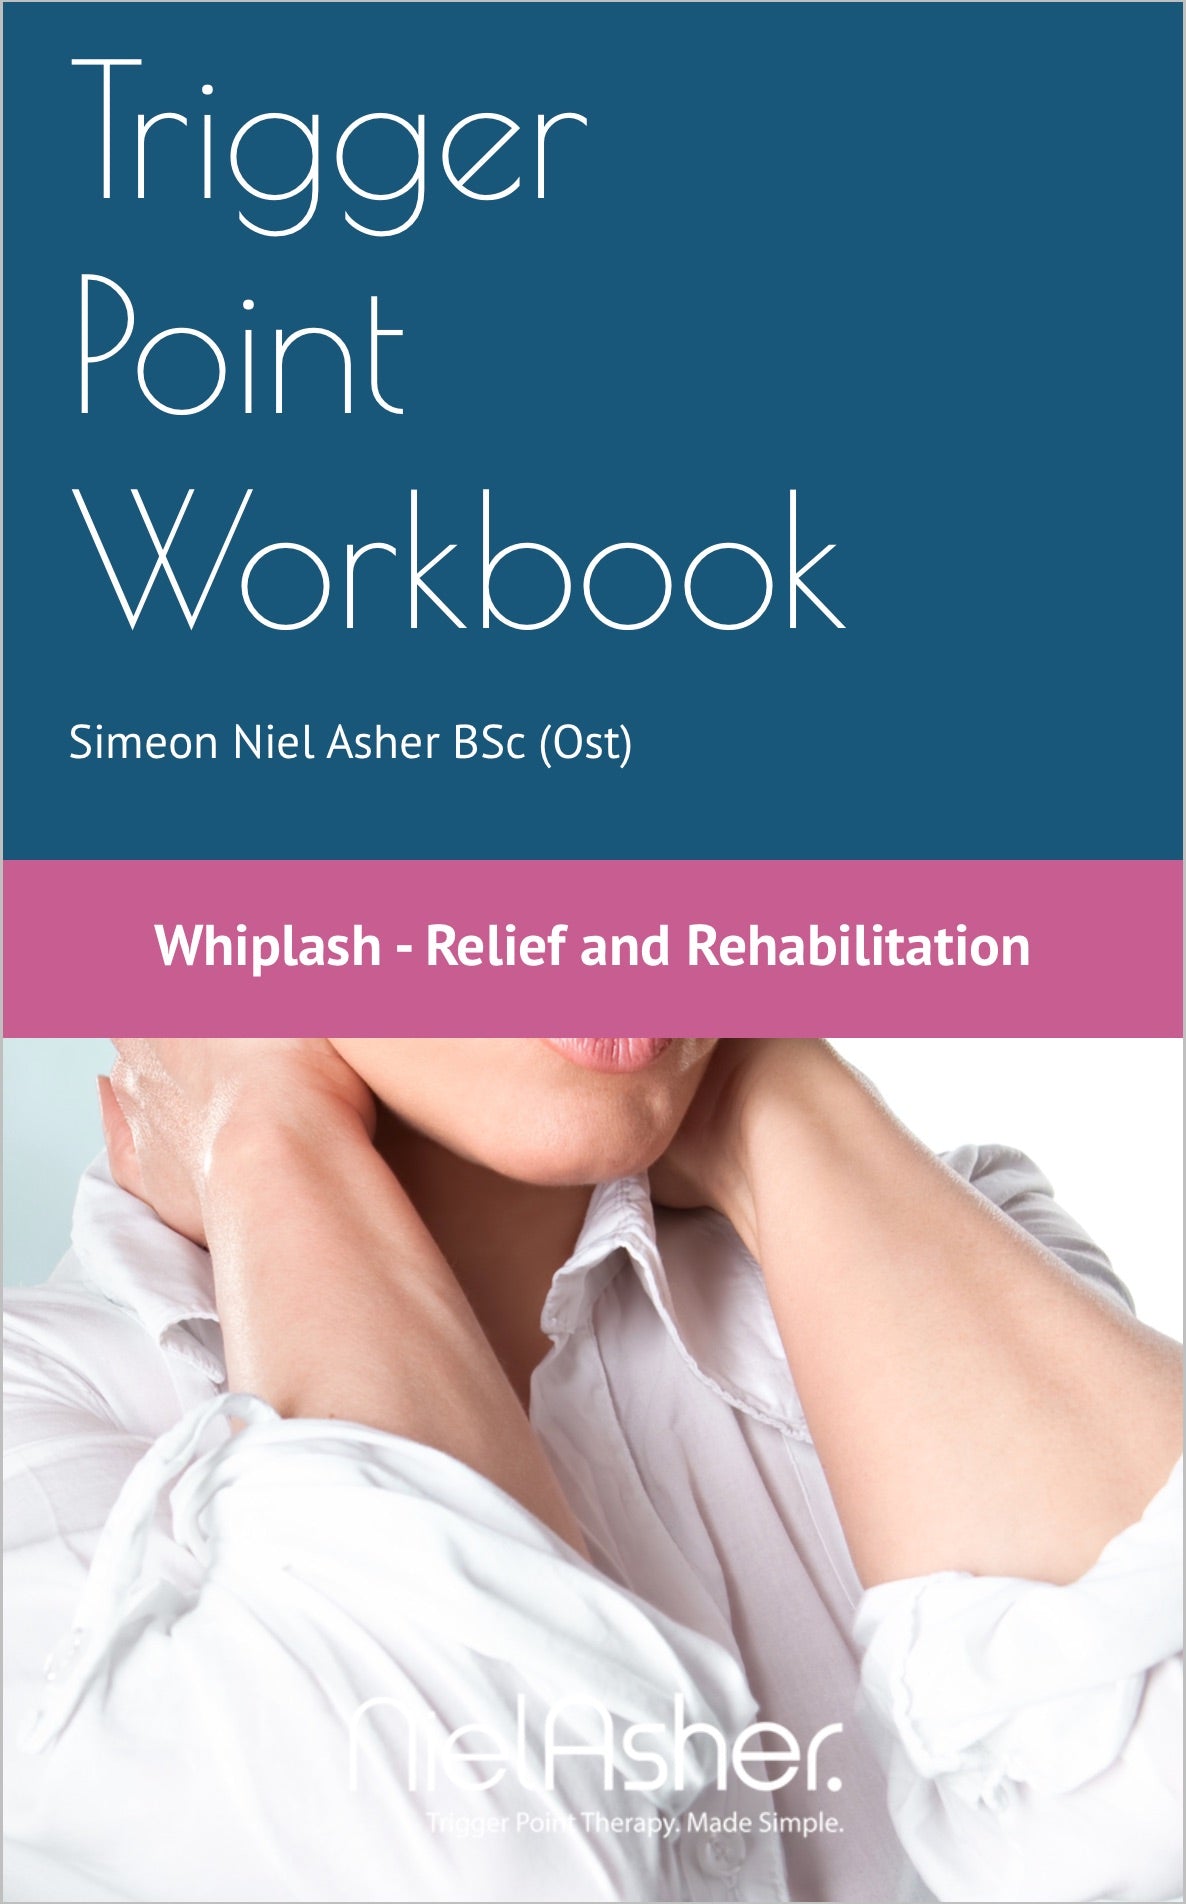 Whiplash Injury - Trigger Point Workbook (Digital Download)